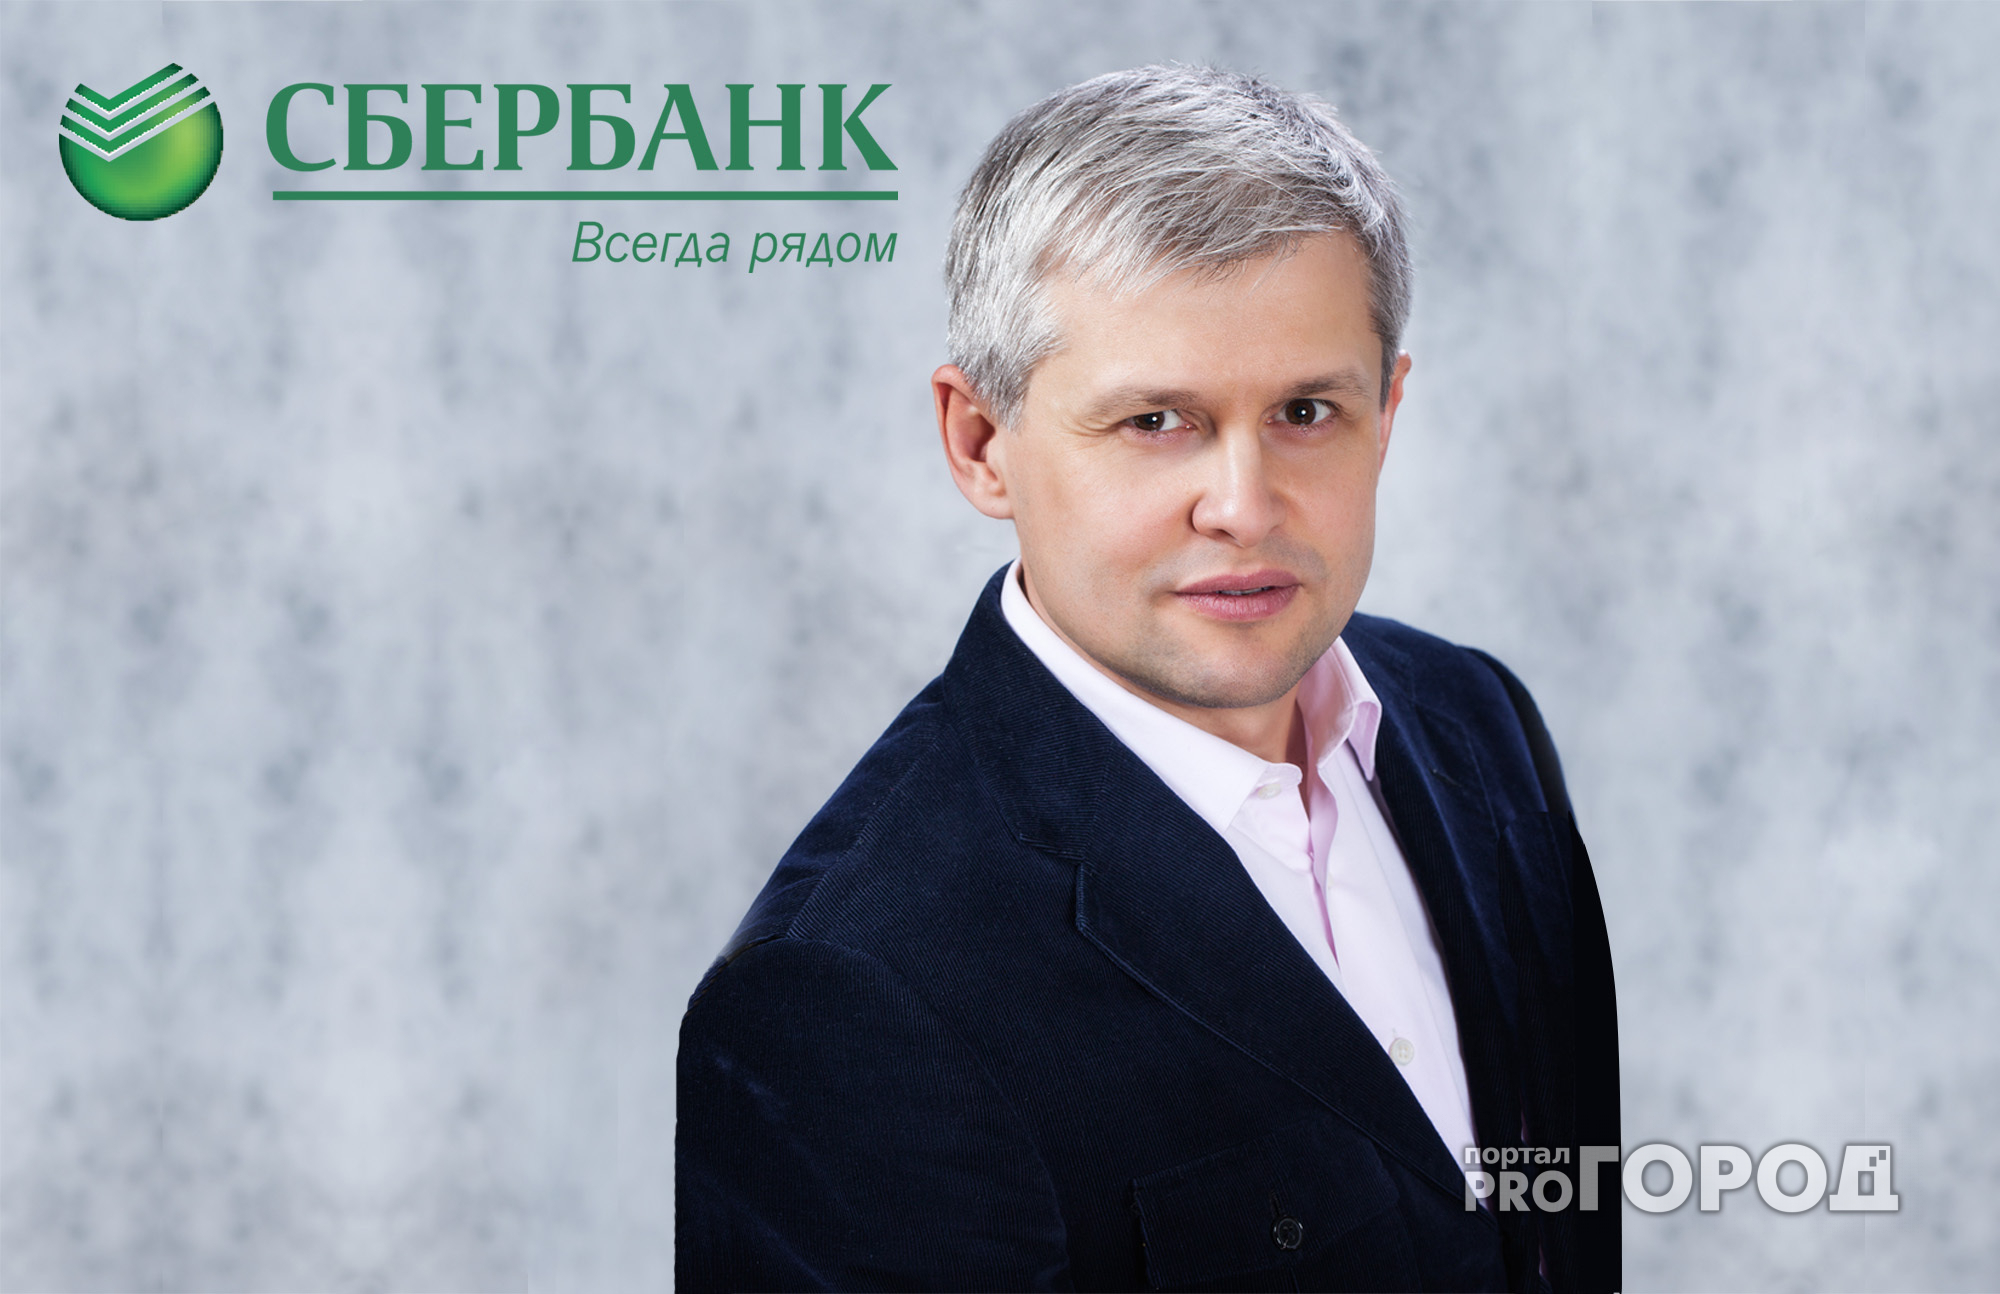 Петр Колтыпин: «Сбербанк формирует новую потребительскую культуру»